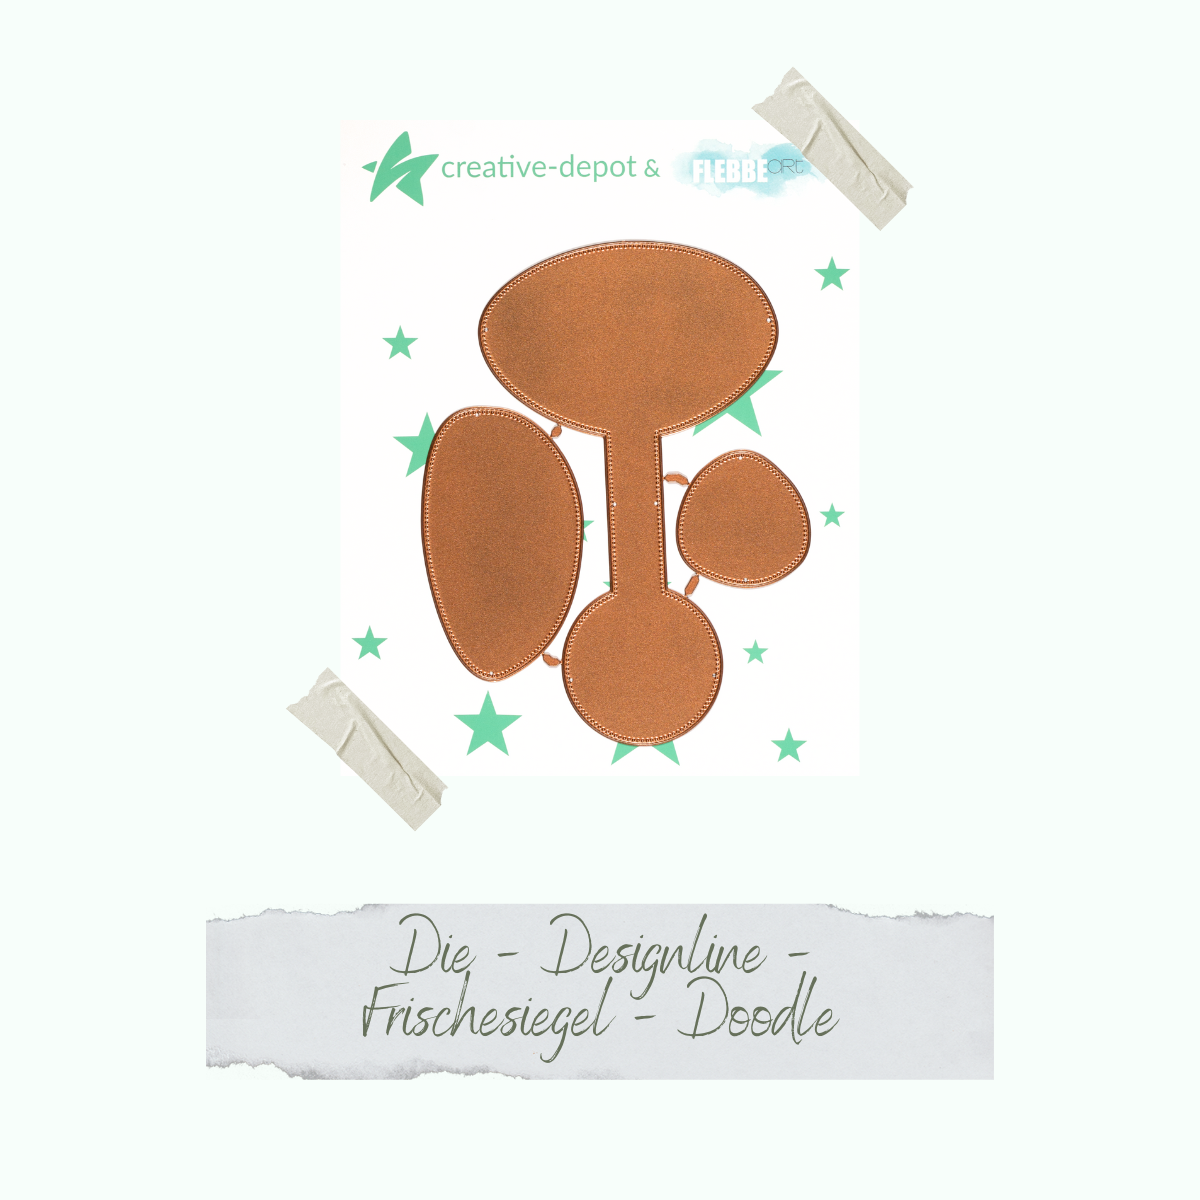 Die - Designline - Frischesiegel - Doodle